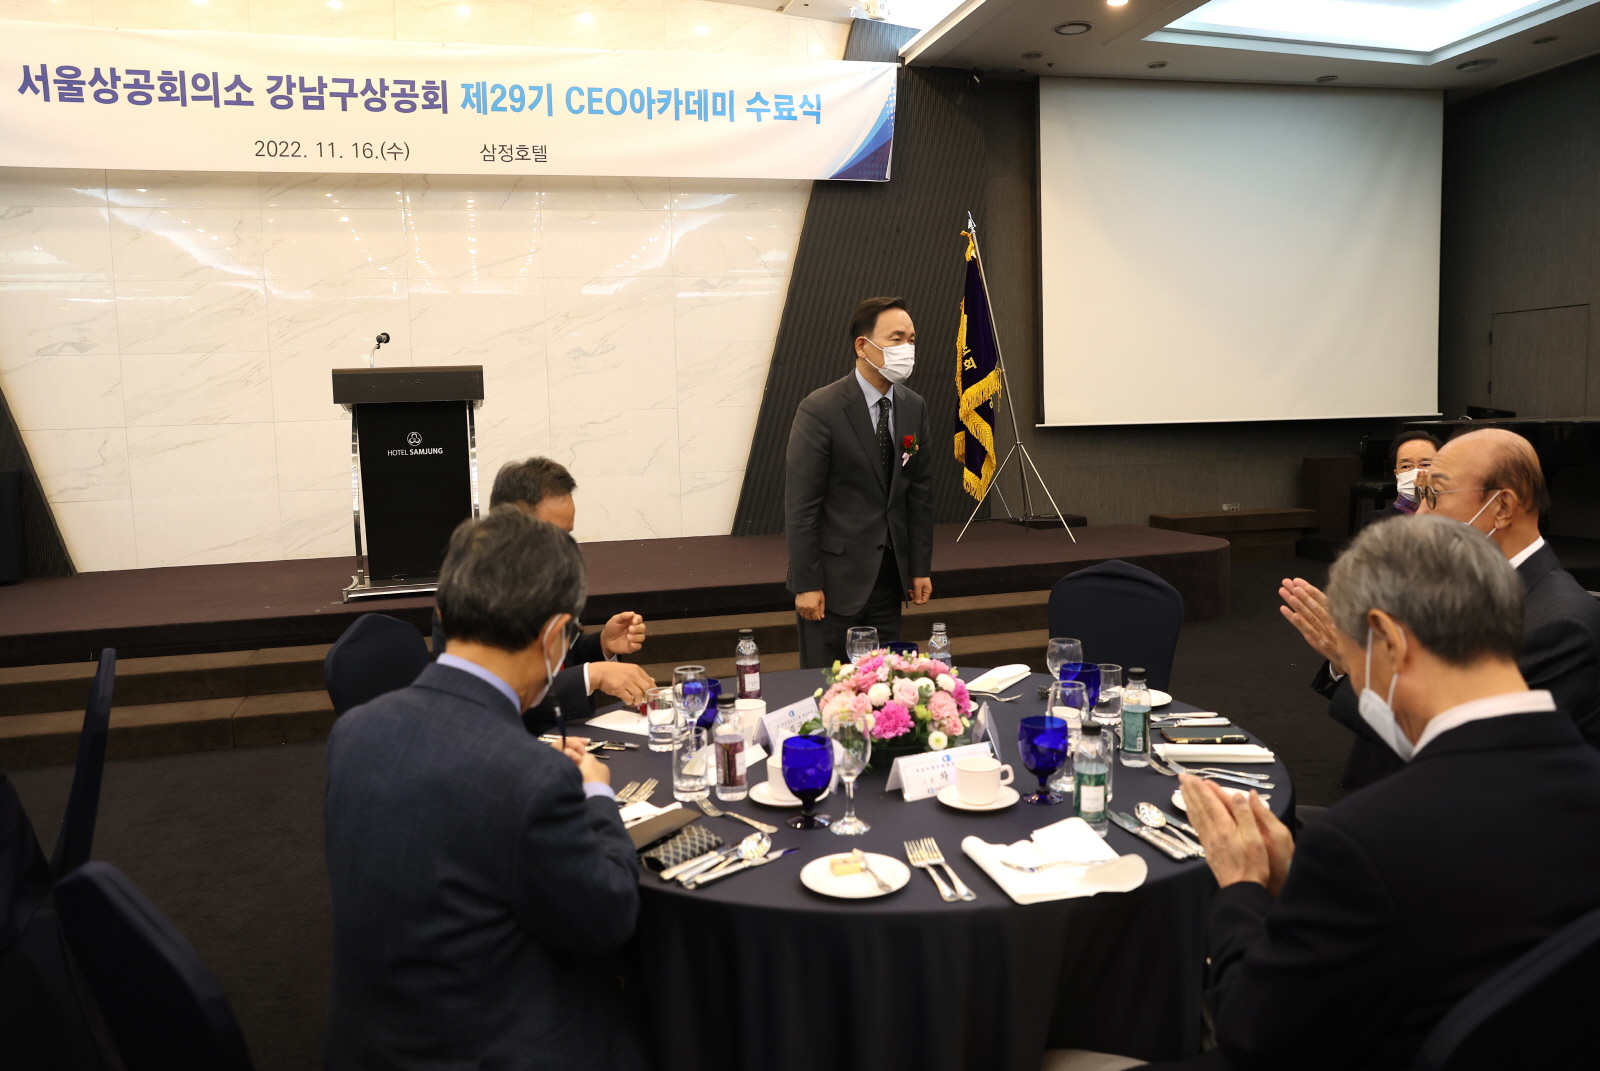 ‘강남구상공회 제29기 CEO아카데미 수료식’ 축하